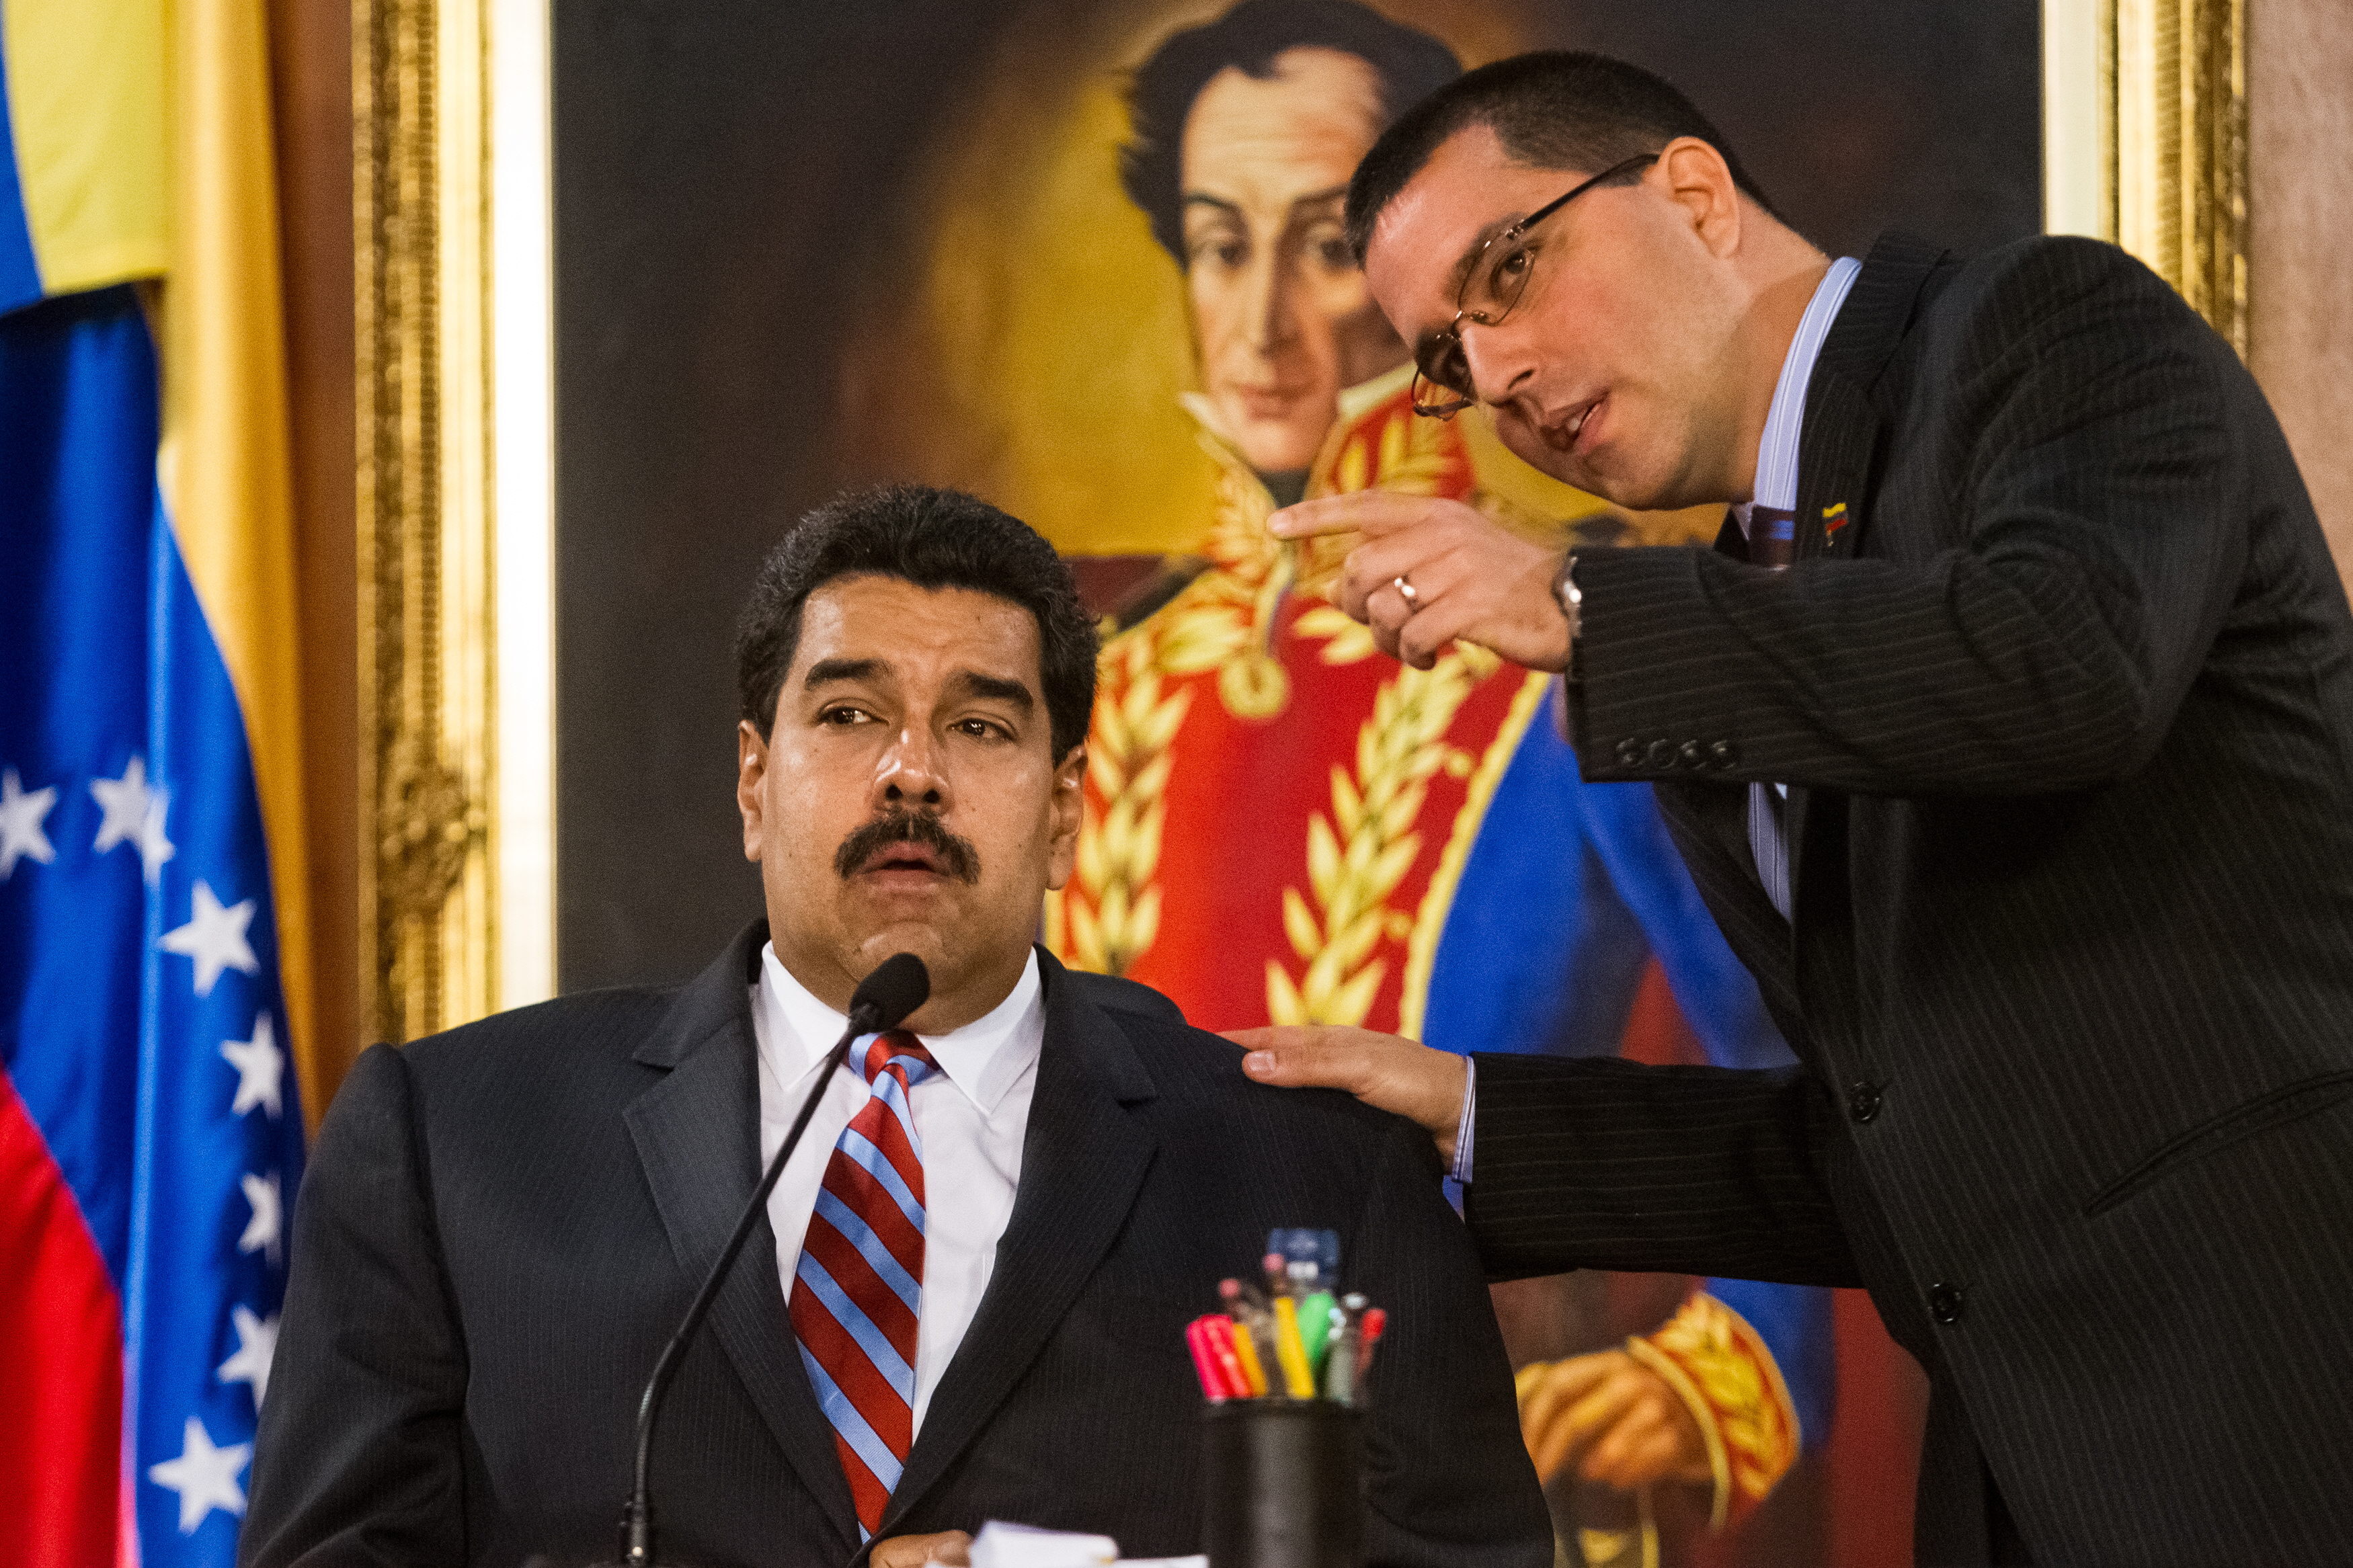 El candidato del régimen de Maduro admitió su derrota electoral en Barinas, el feudo de Hugo Chávez: “No hemos logrado el objetivo”